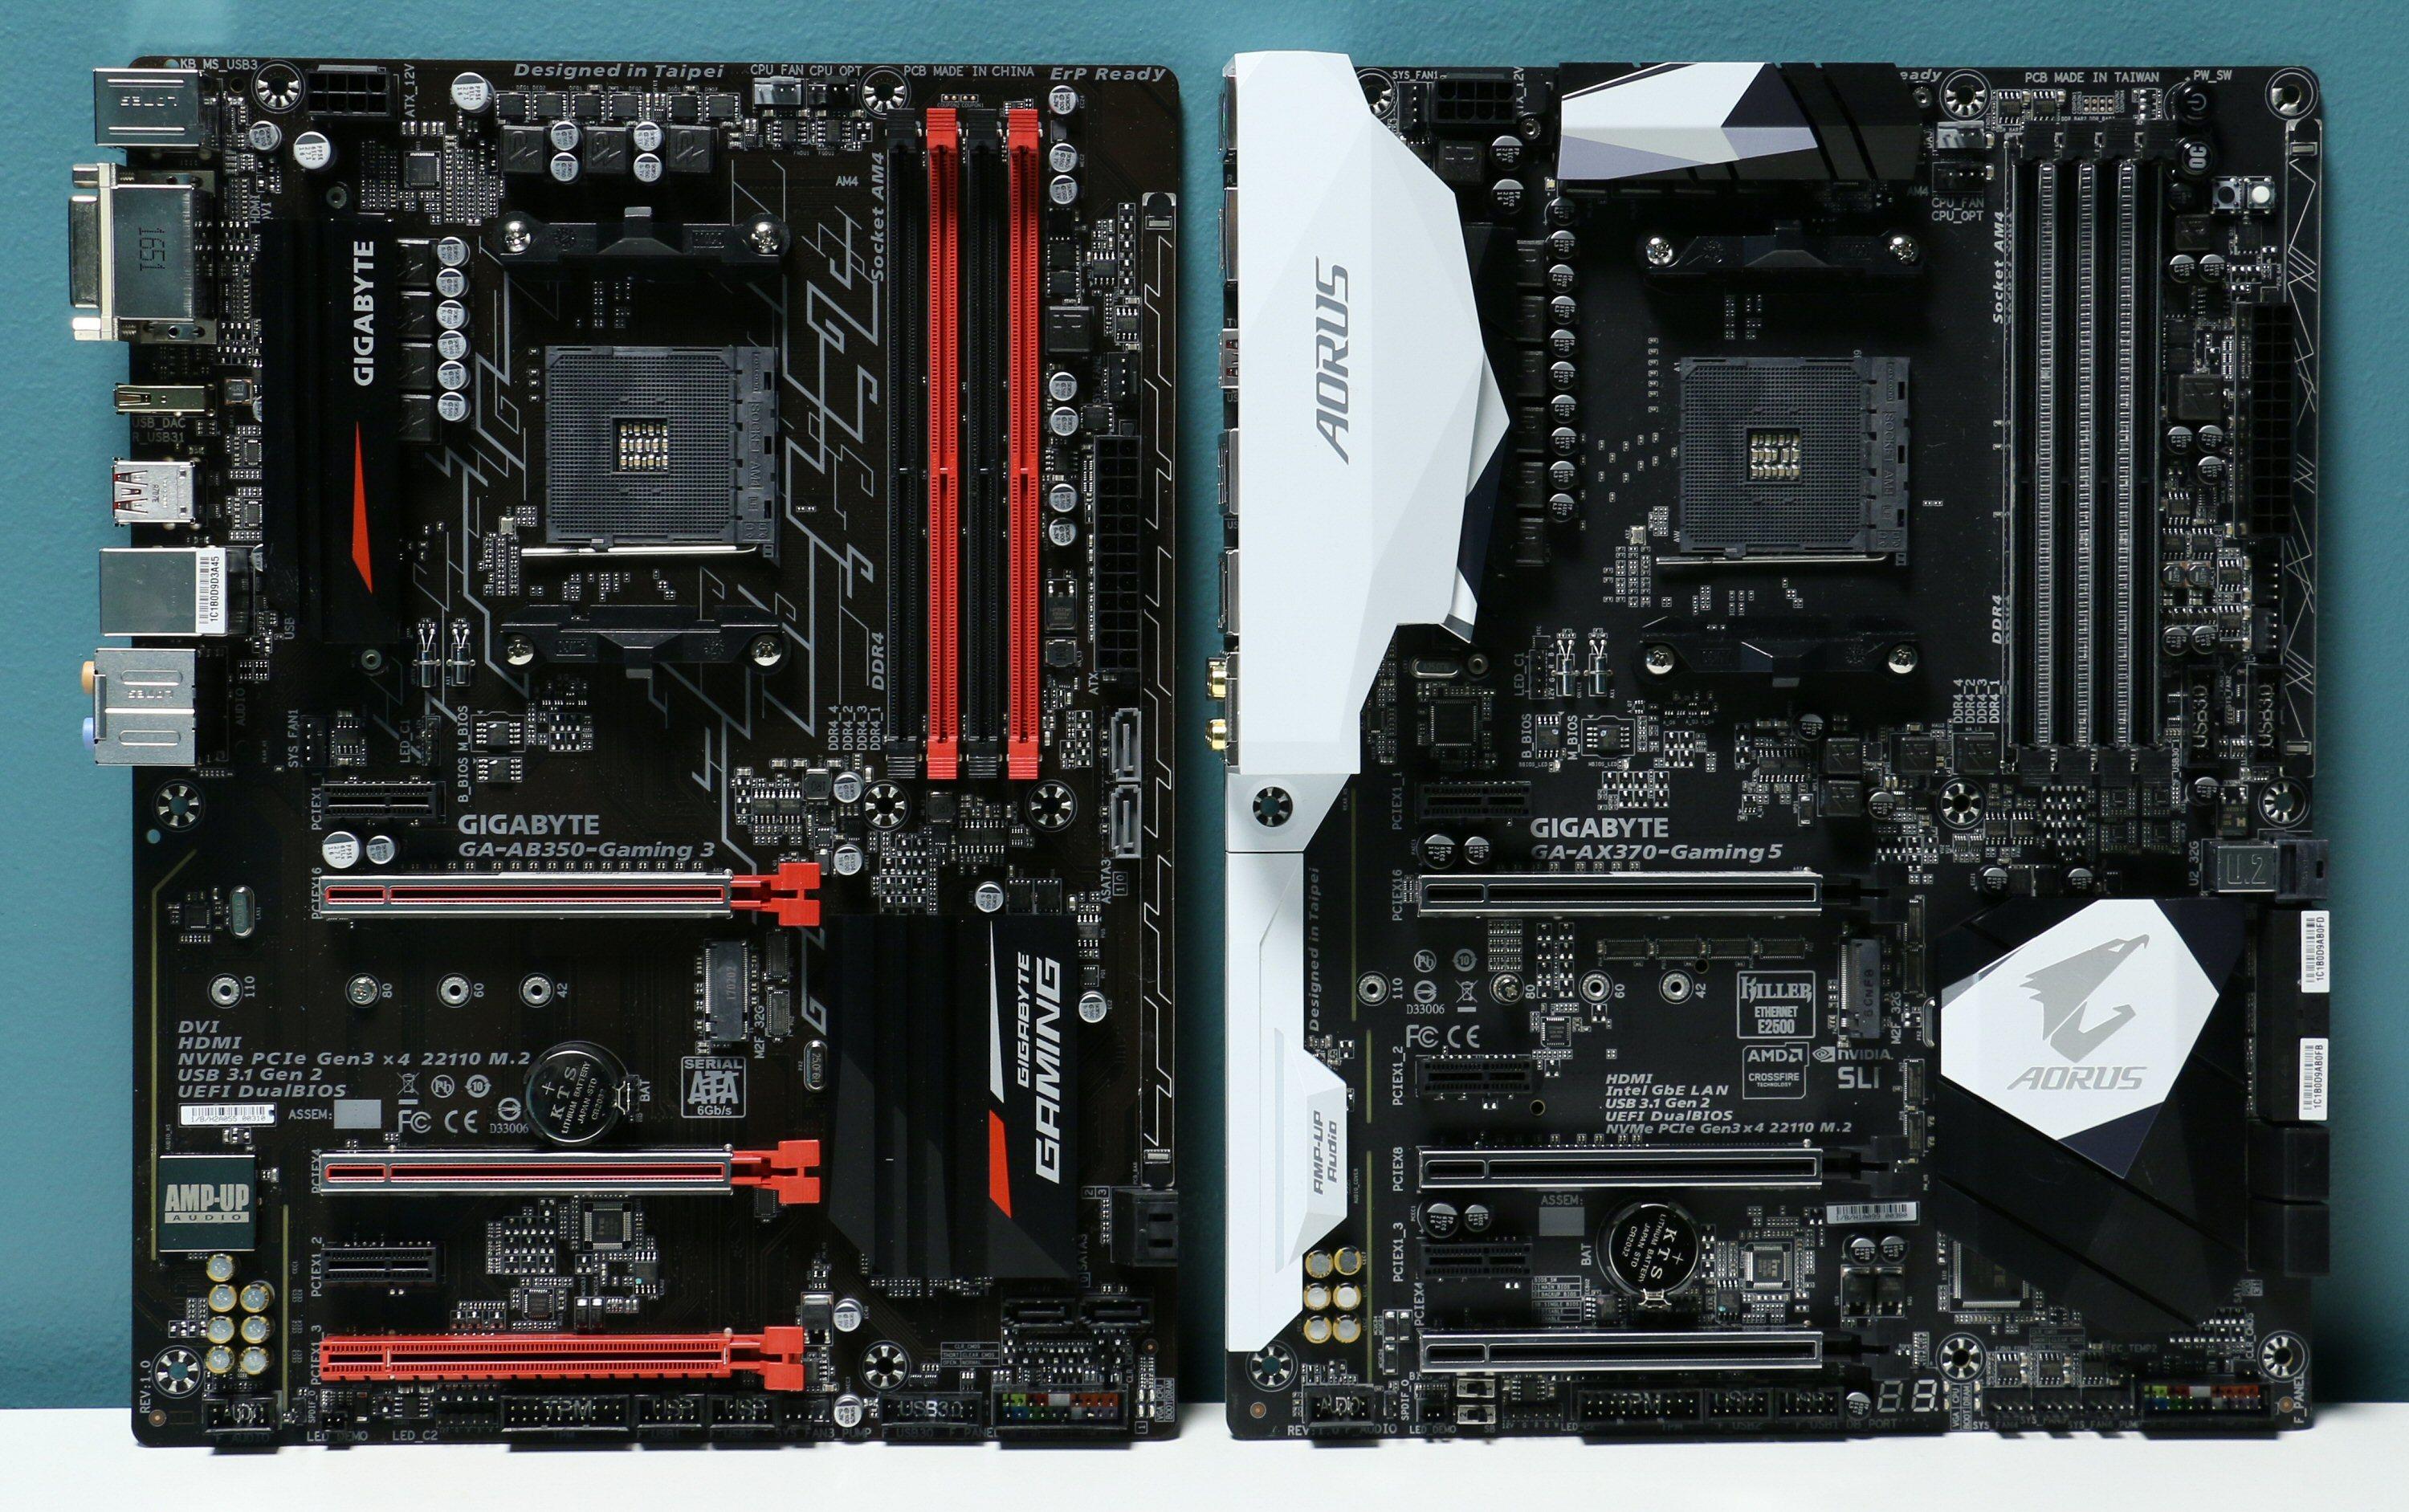 To AM4-hovedkort fra Gigabyte: AB350-Gaming 3 til venstre og AX370-Gaming 5 til høyre. De har AMD-brikkesettene B350 og X370.